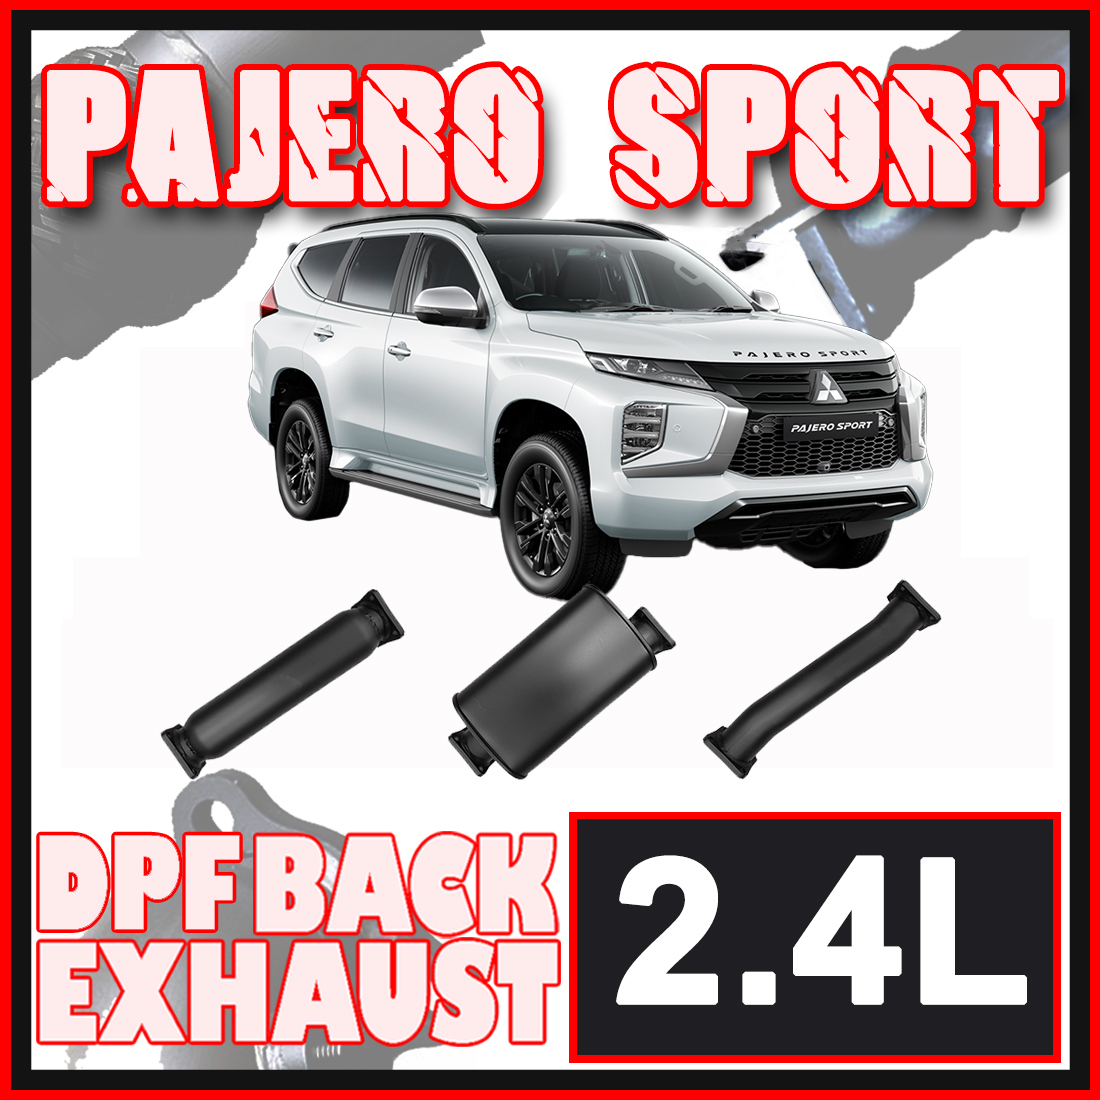 Mitsubishi Pajero Sport 2.4L DPF Model Ignite Exhaust image